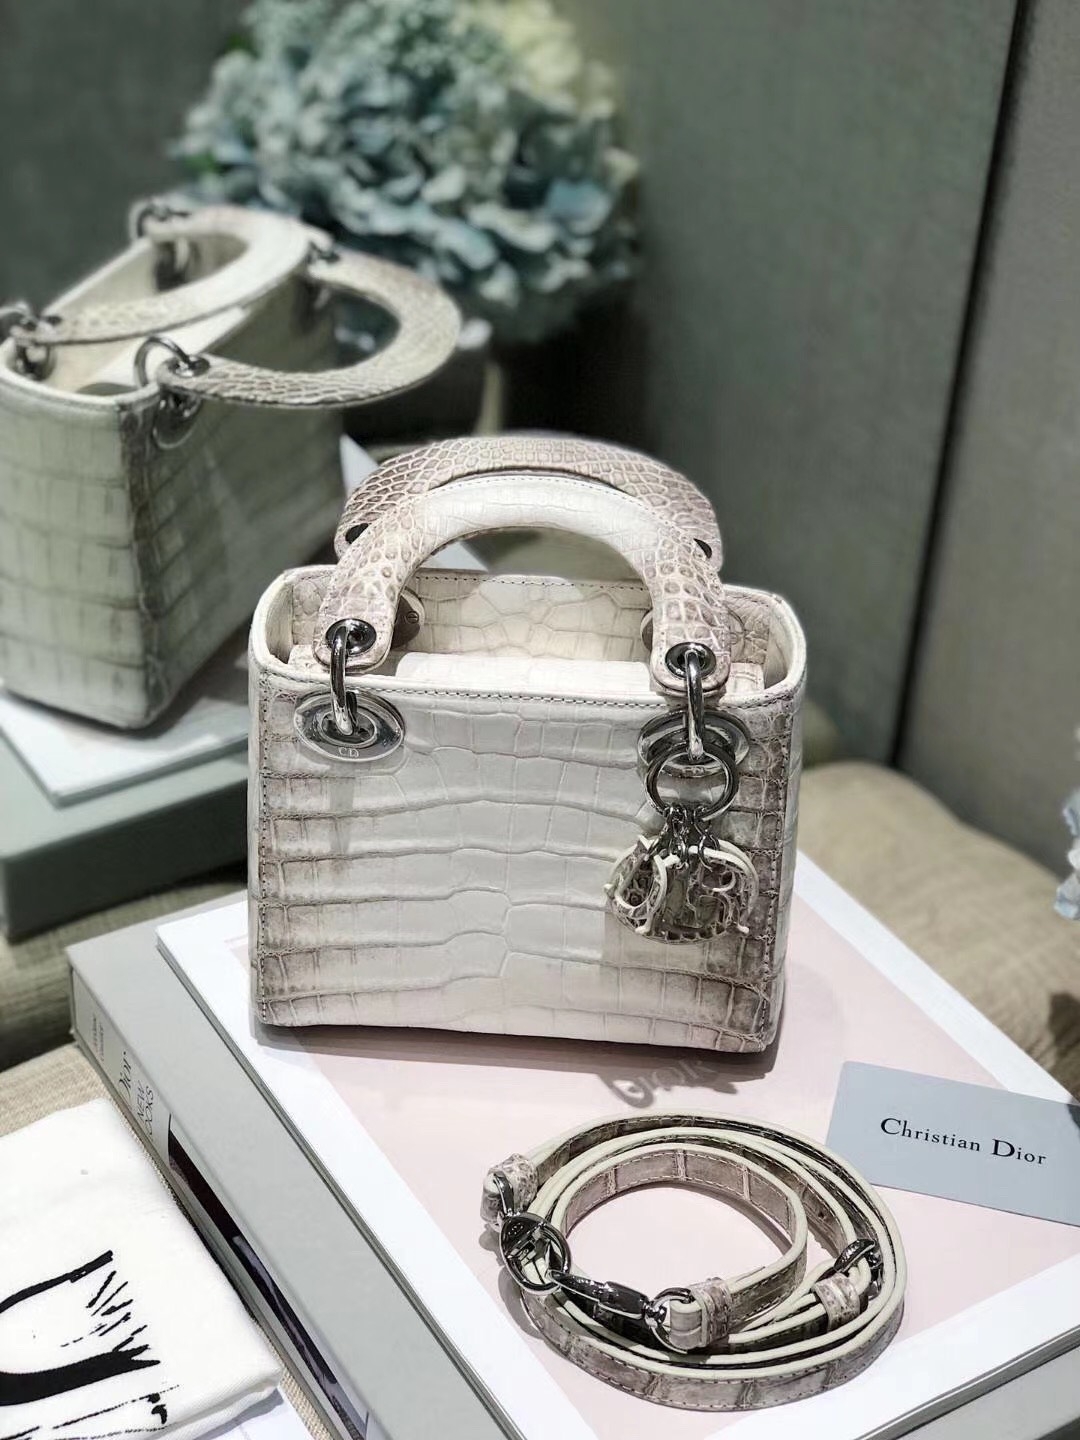 Đẳng cấp chiếc túi Lady Dior bạch tạng đang gây sốt: Đỉnh cao kỹ thuật xử lý da cá sấu, khách hàng được đánh dấu chủ quyền theo cách độc lạ - Ảnh 1.